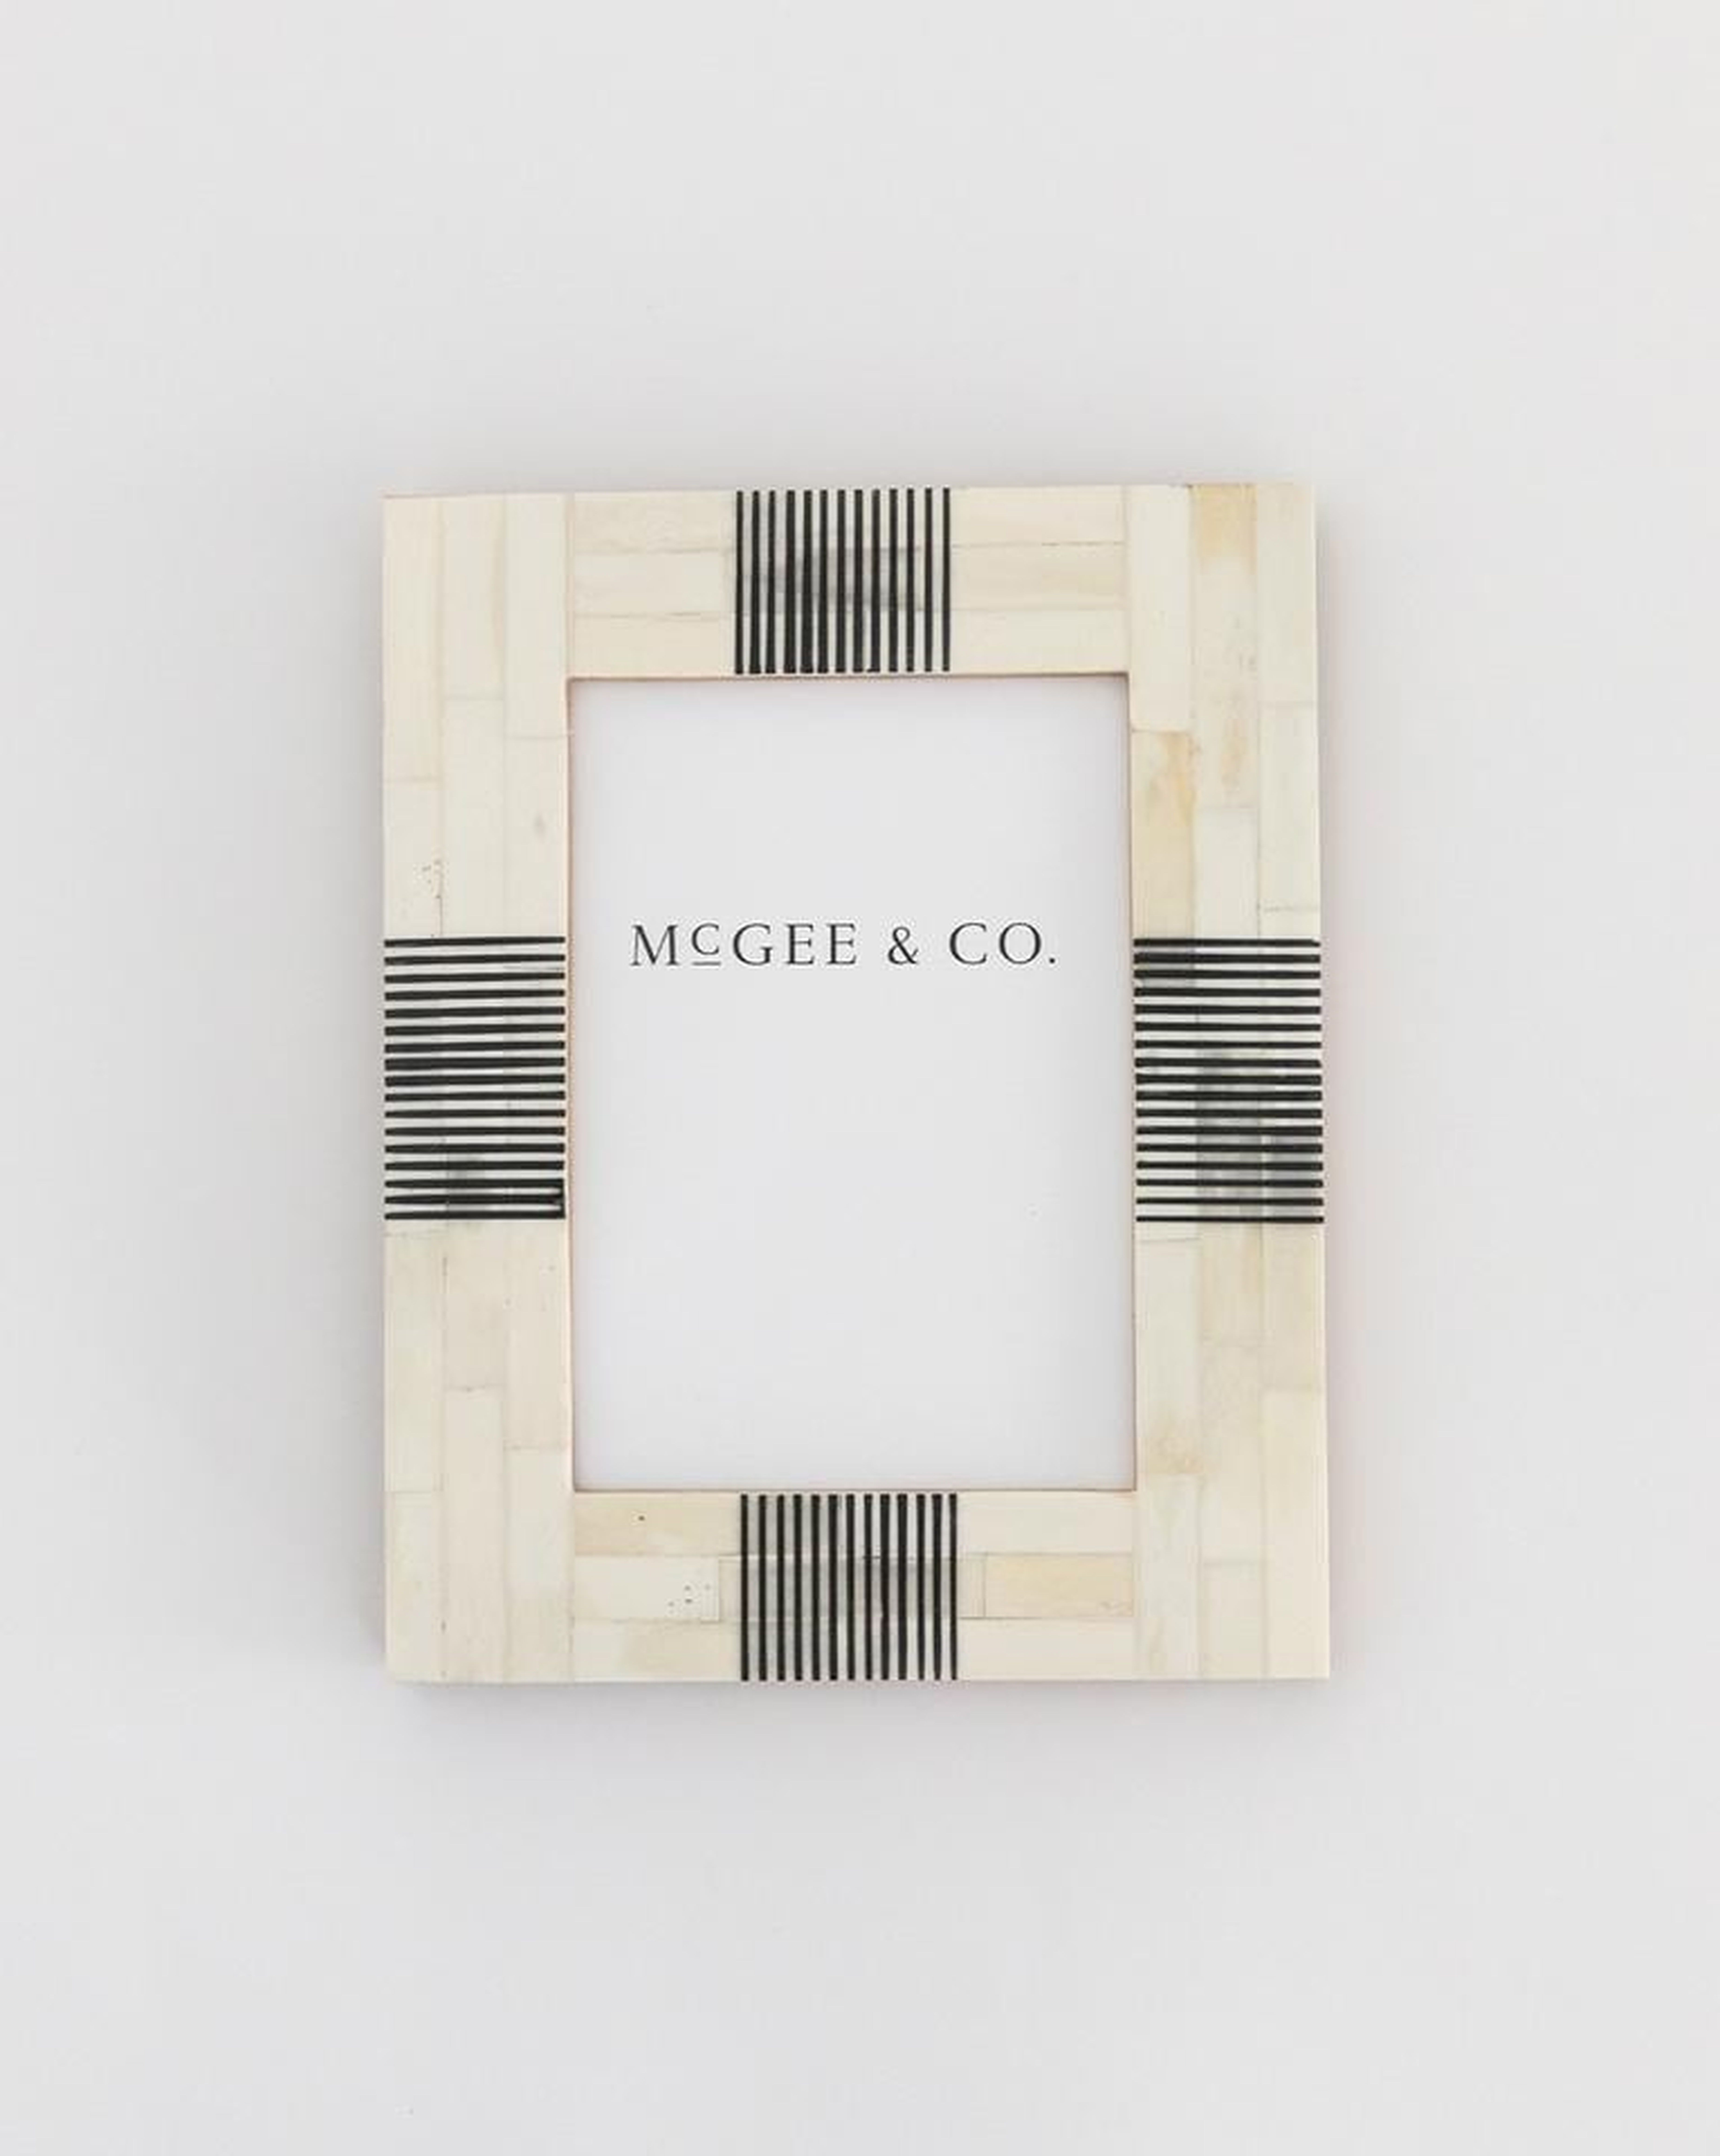 STRIPED BONE FRAME - 5" x 7" - McGee & Co.